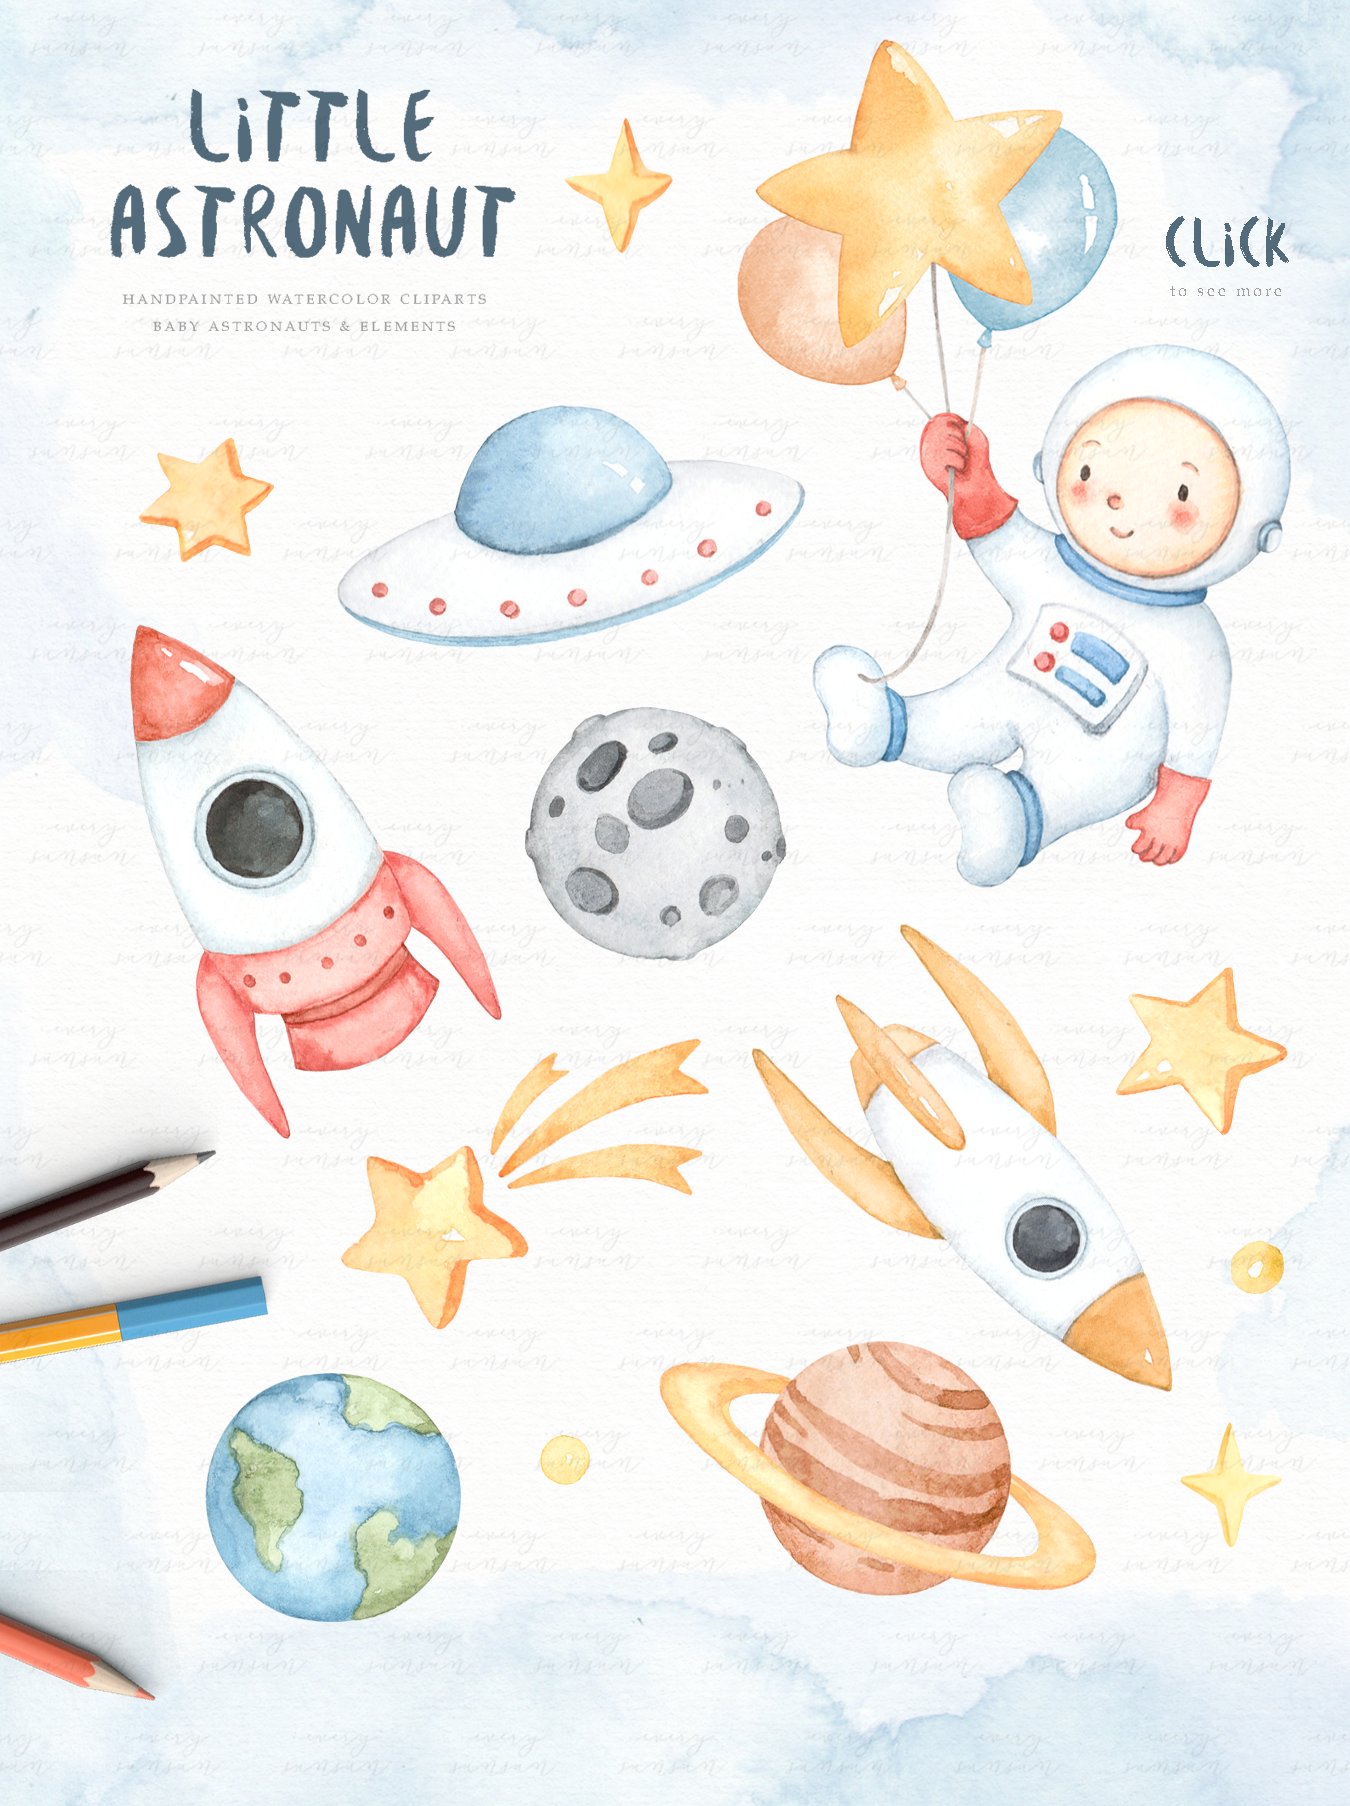 Little Astronaut Watercolor Clip Art preview image.